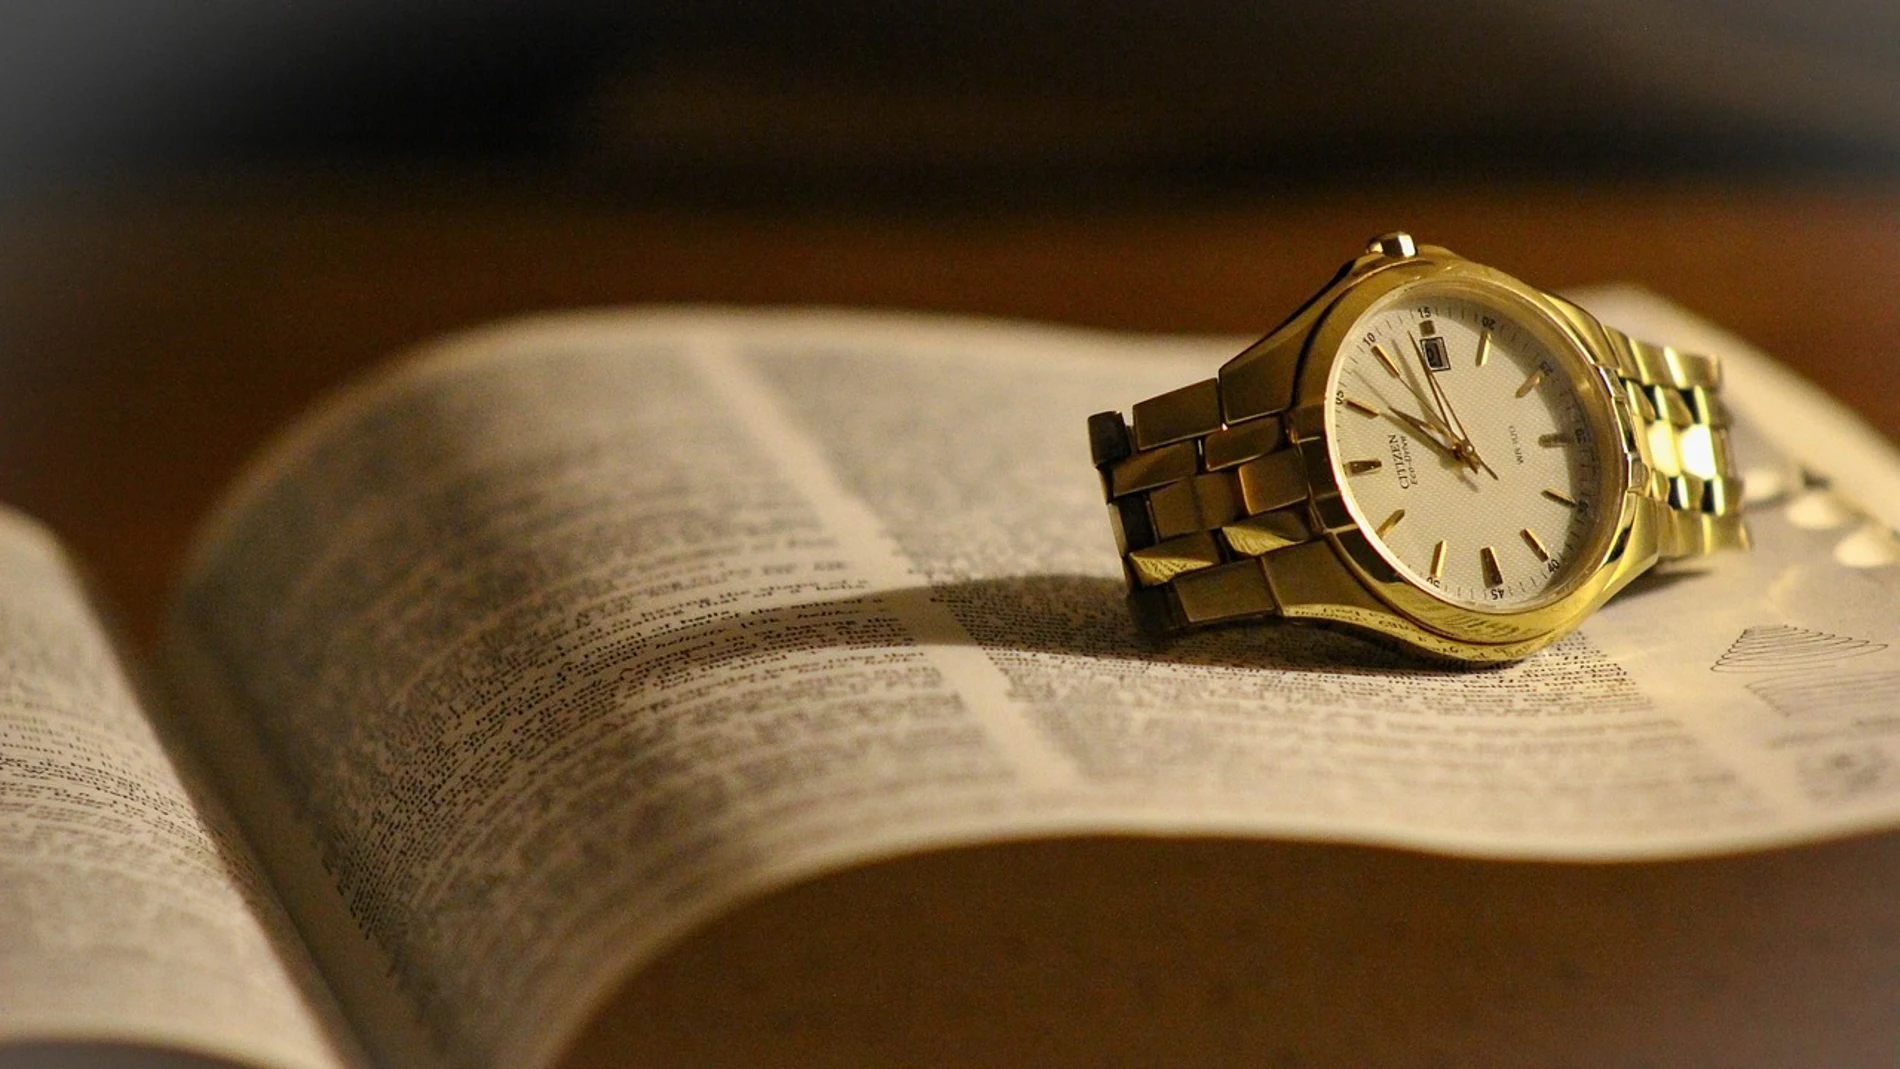 La palabra "reloj" es una de las pocas palabras que "jota" en el castellano